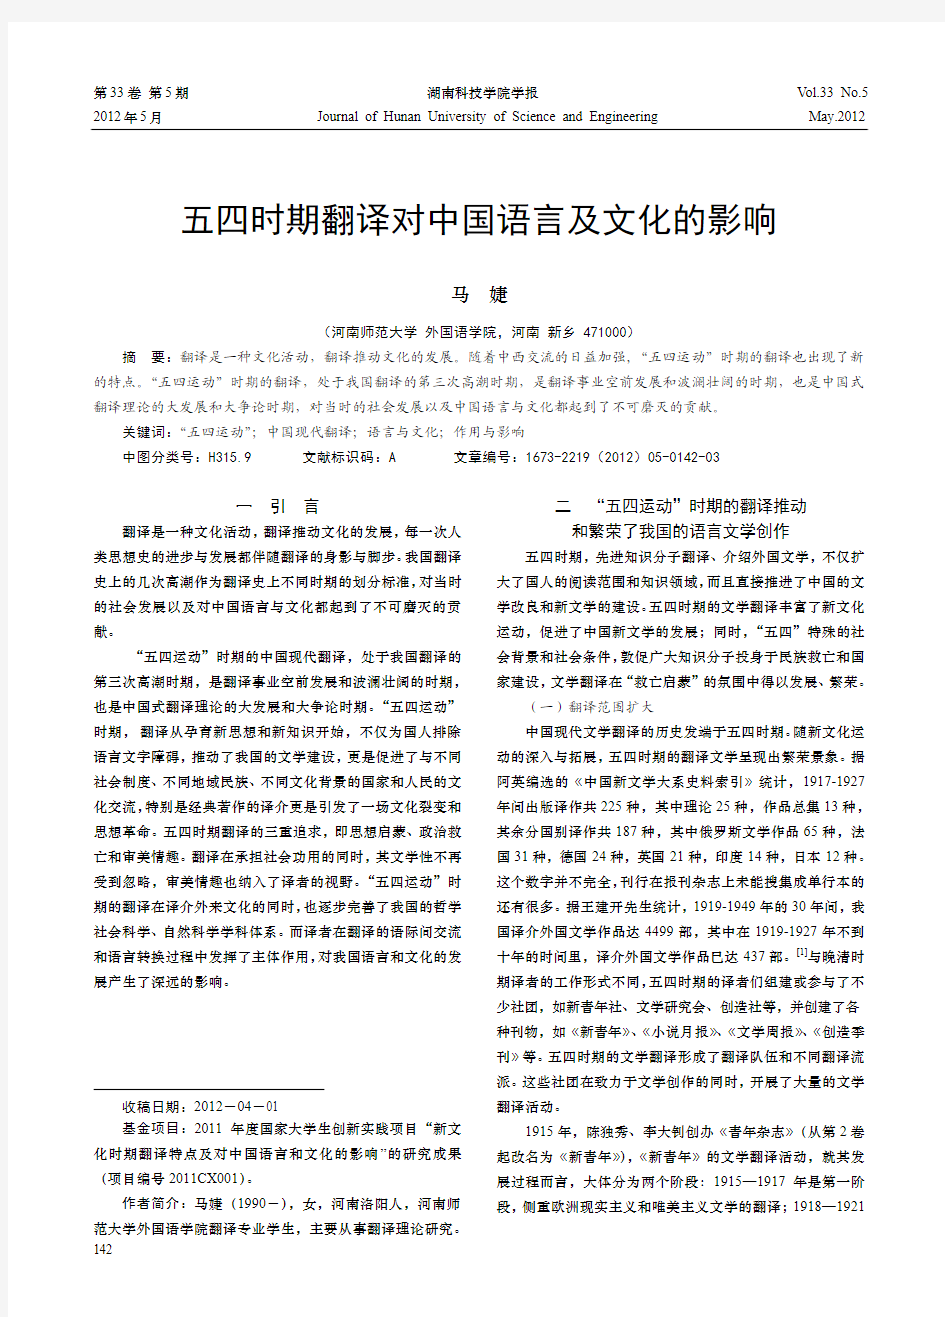 五四时期翻译对中国语言及文化的影响